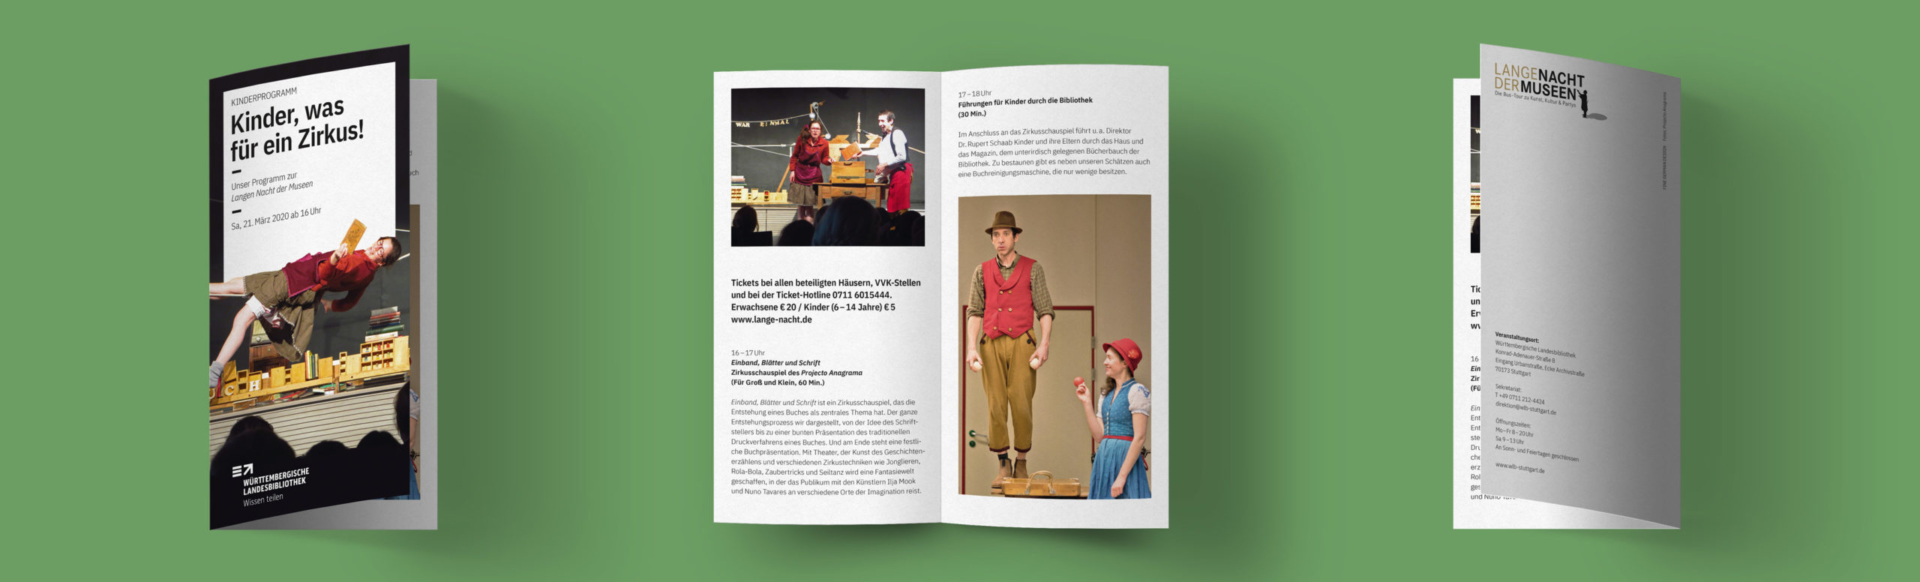 Gestaltung Kinderprogramm Flyer der Volksbühne im Großen Hirschgraben